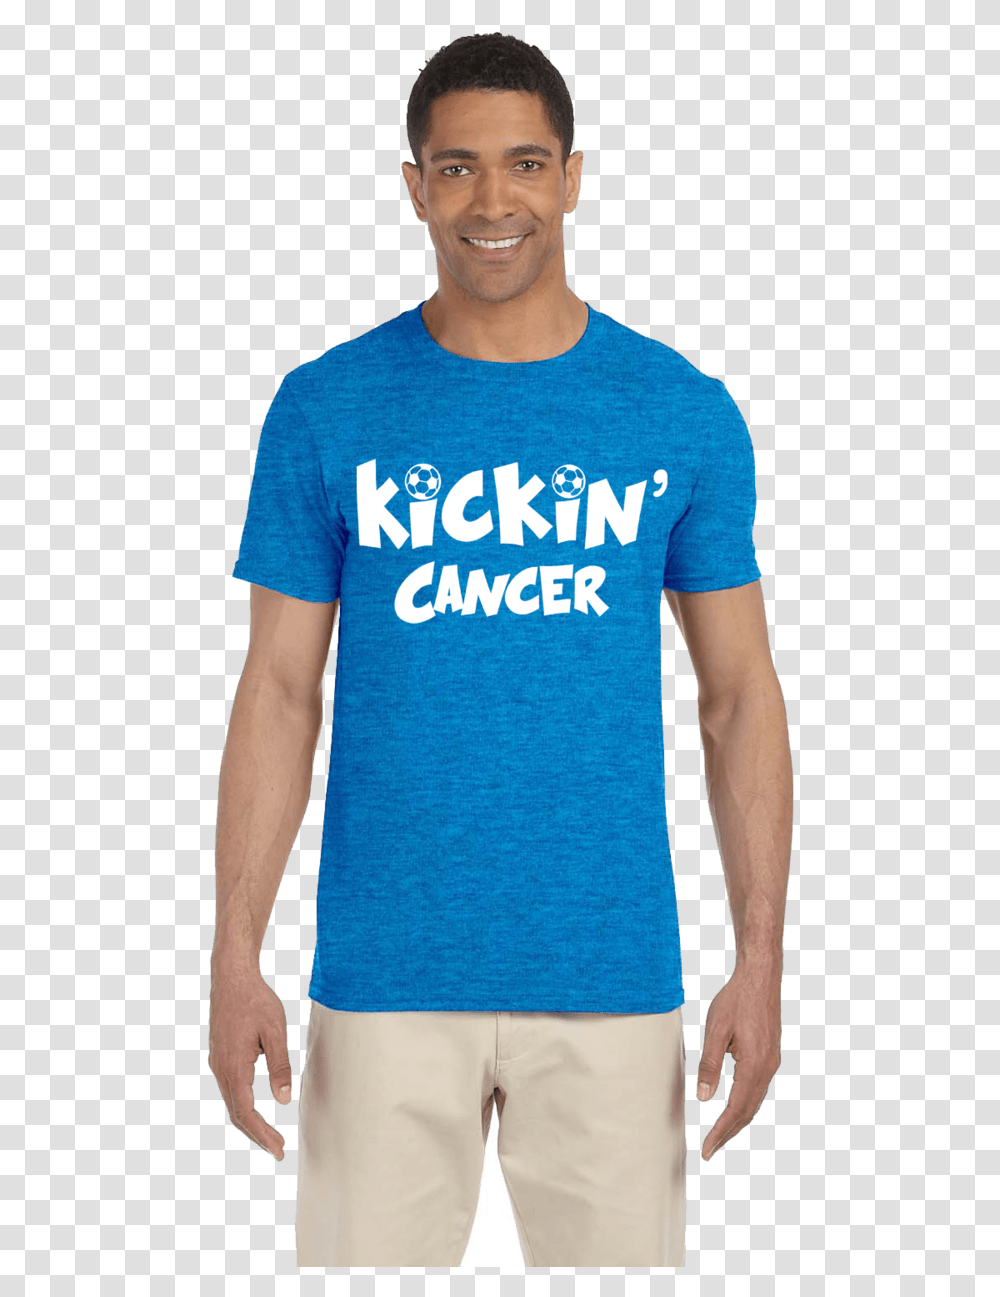 Kickin Cancer Shirt, Apparel, Person, Human Transparent Png